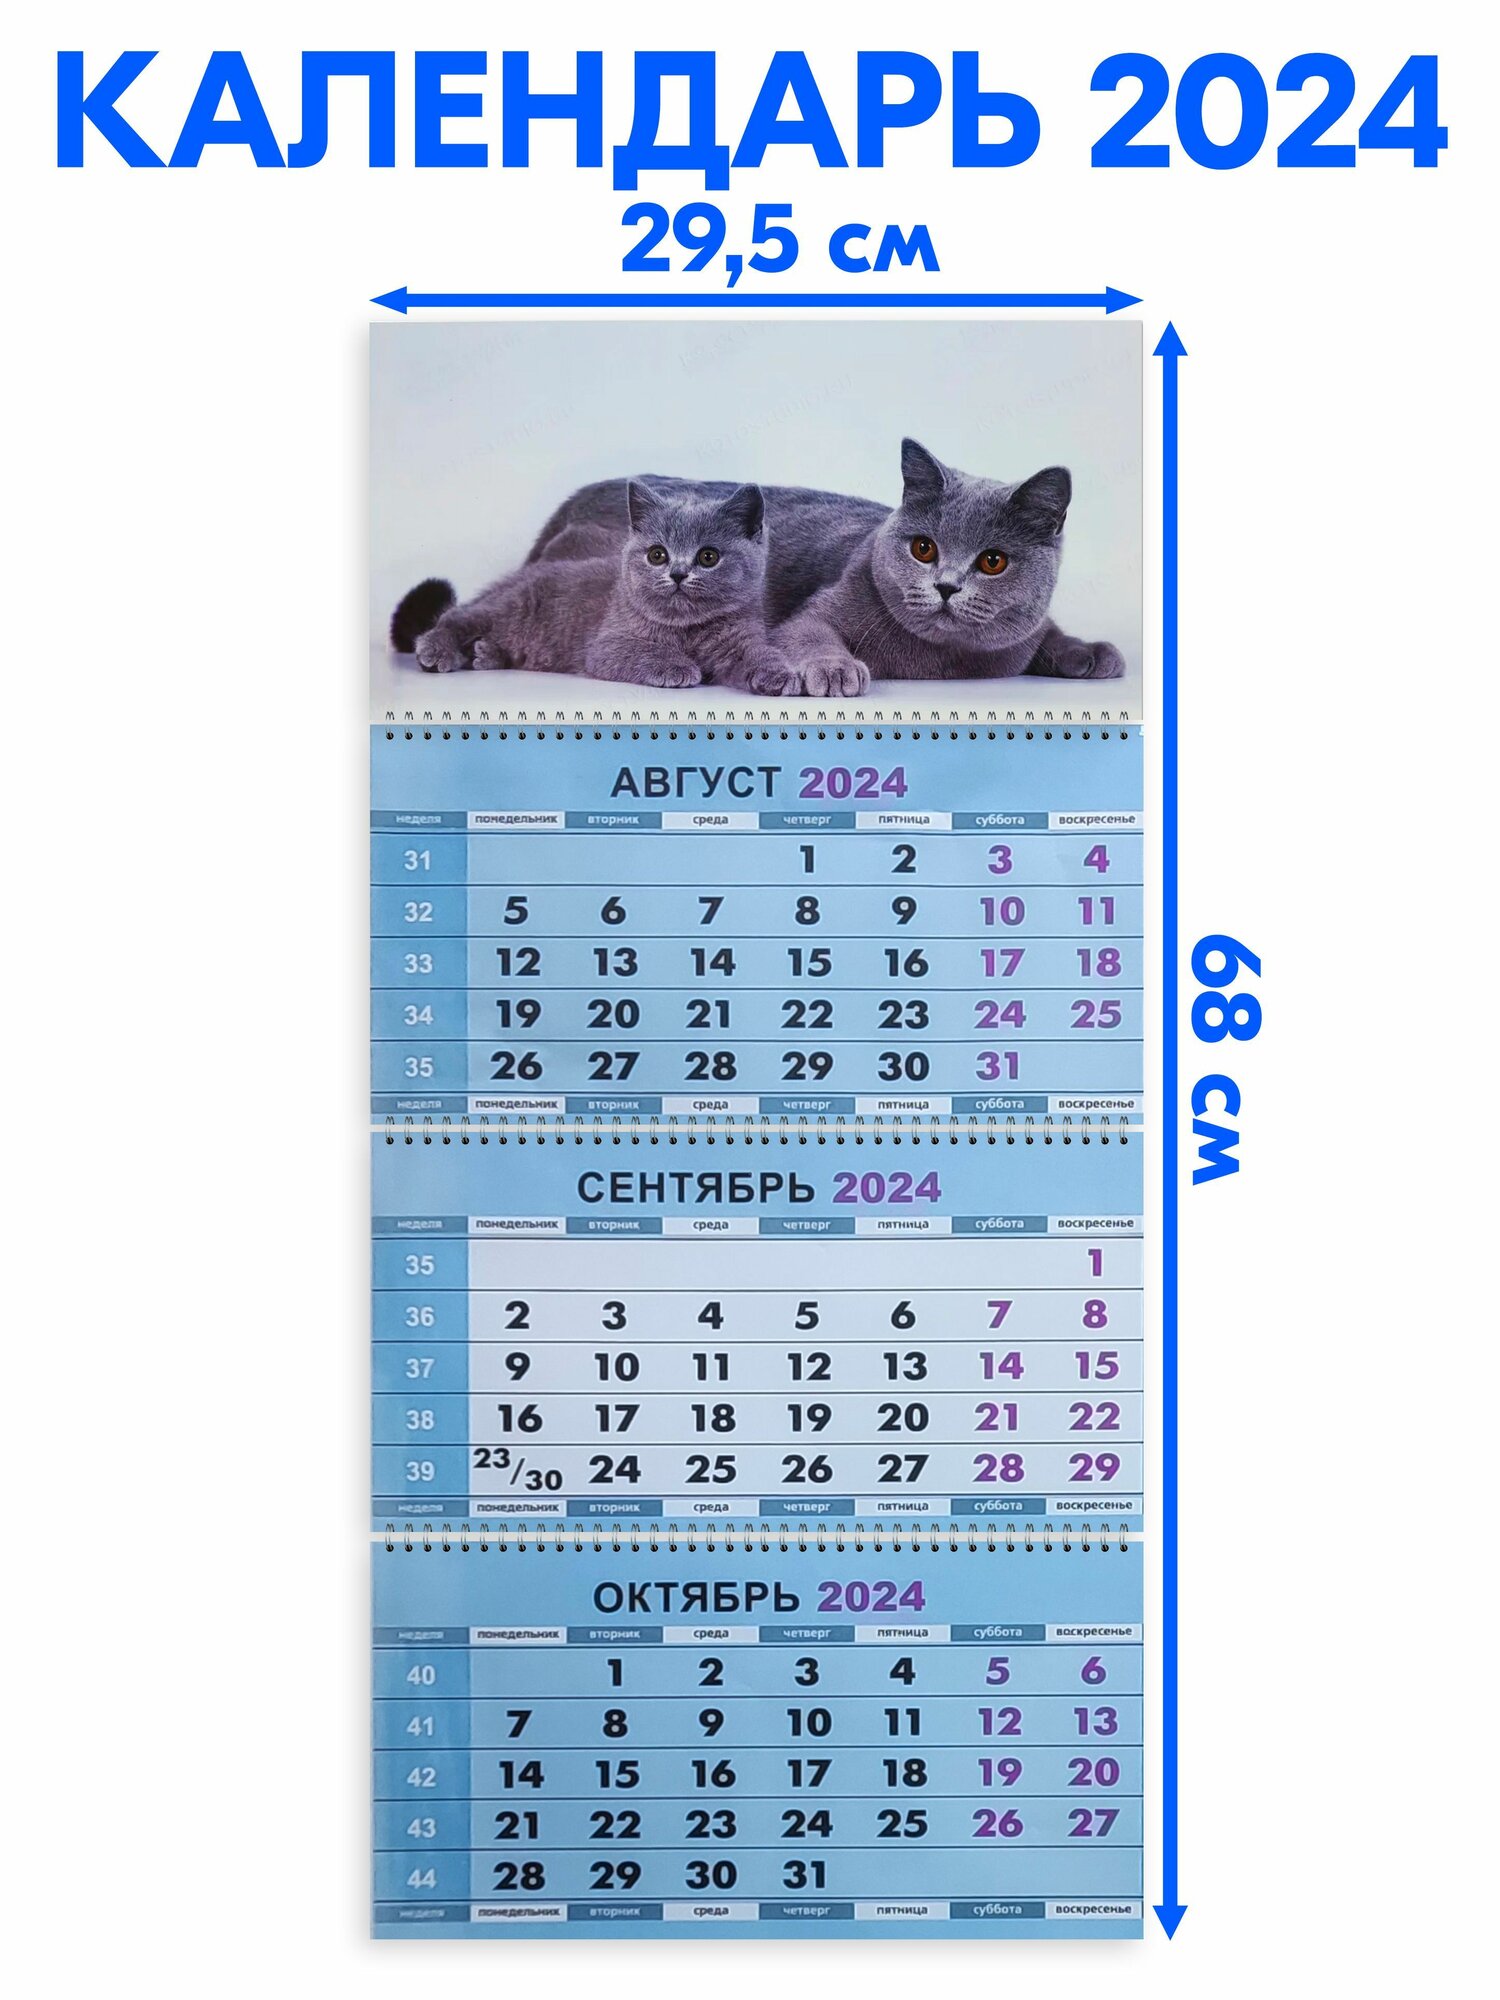 Календарь квартальный трехблочный 2024 год Два Британца. Длина календаря в развёрнутом виде - 68 см, ширина - 29,5 см.